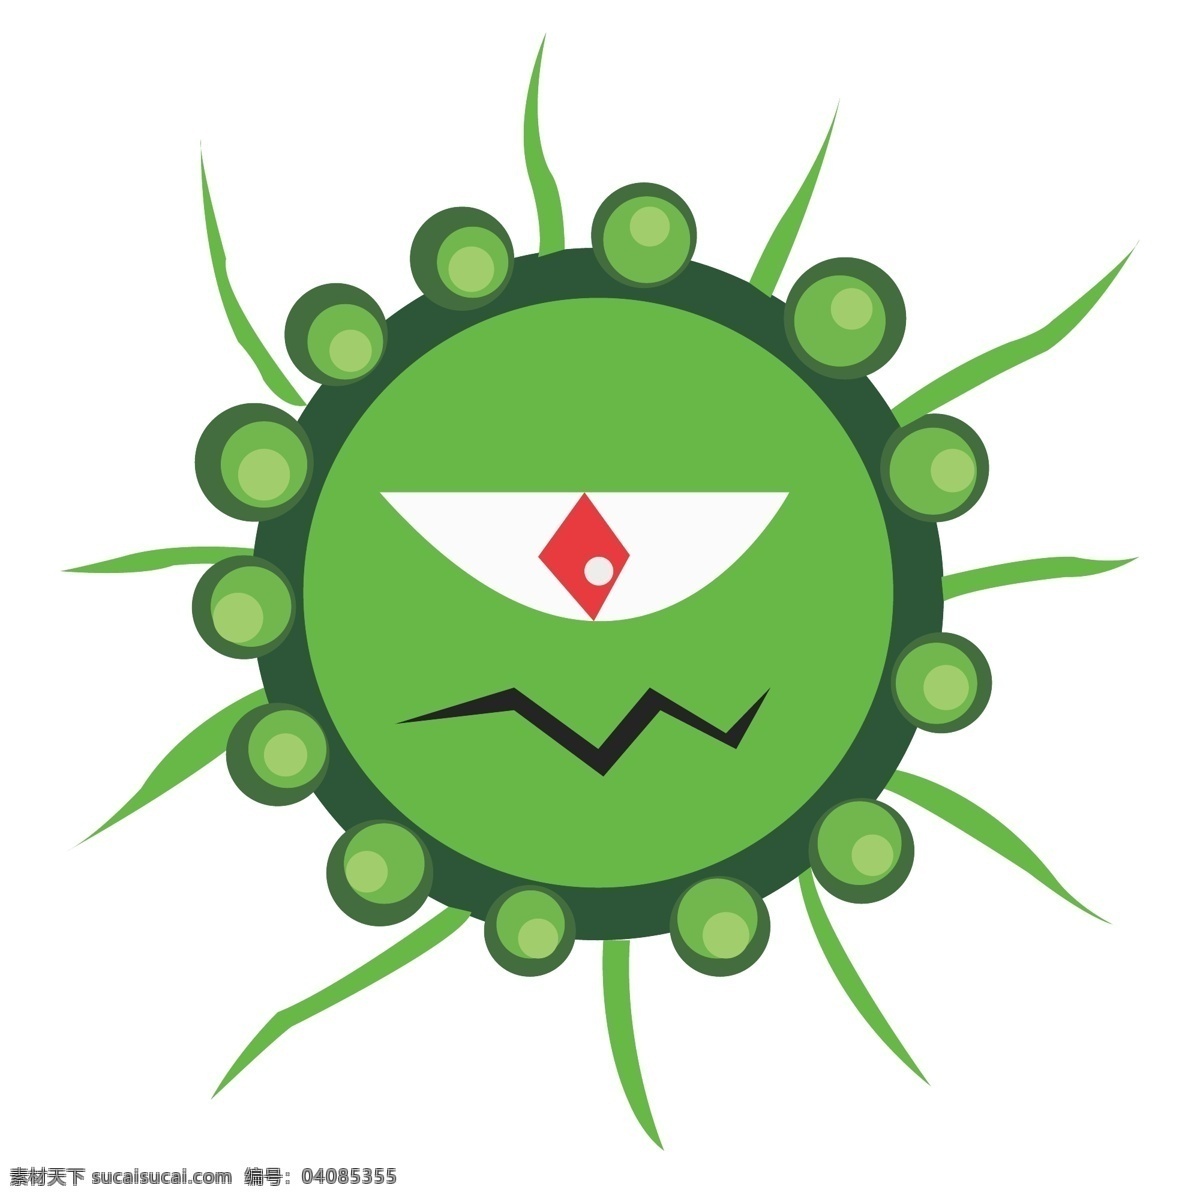 绿色 圆形 细菌 插图 红色眼珠 细菌眼镜 圆形插图 绿色图案 仿真微生物 生物工程 生物 生病 病毒 独眼细菌